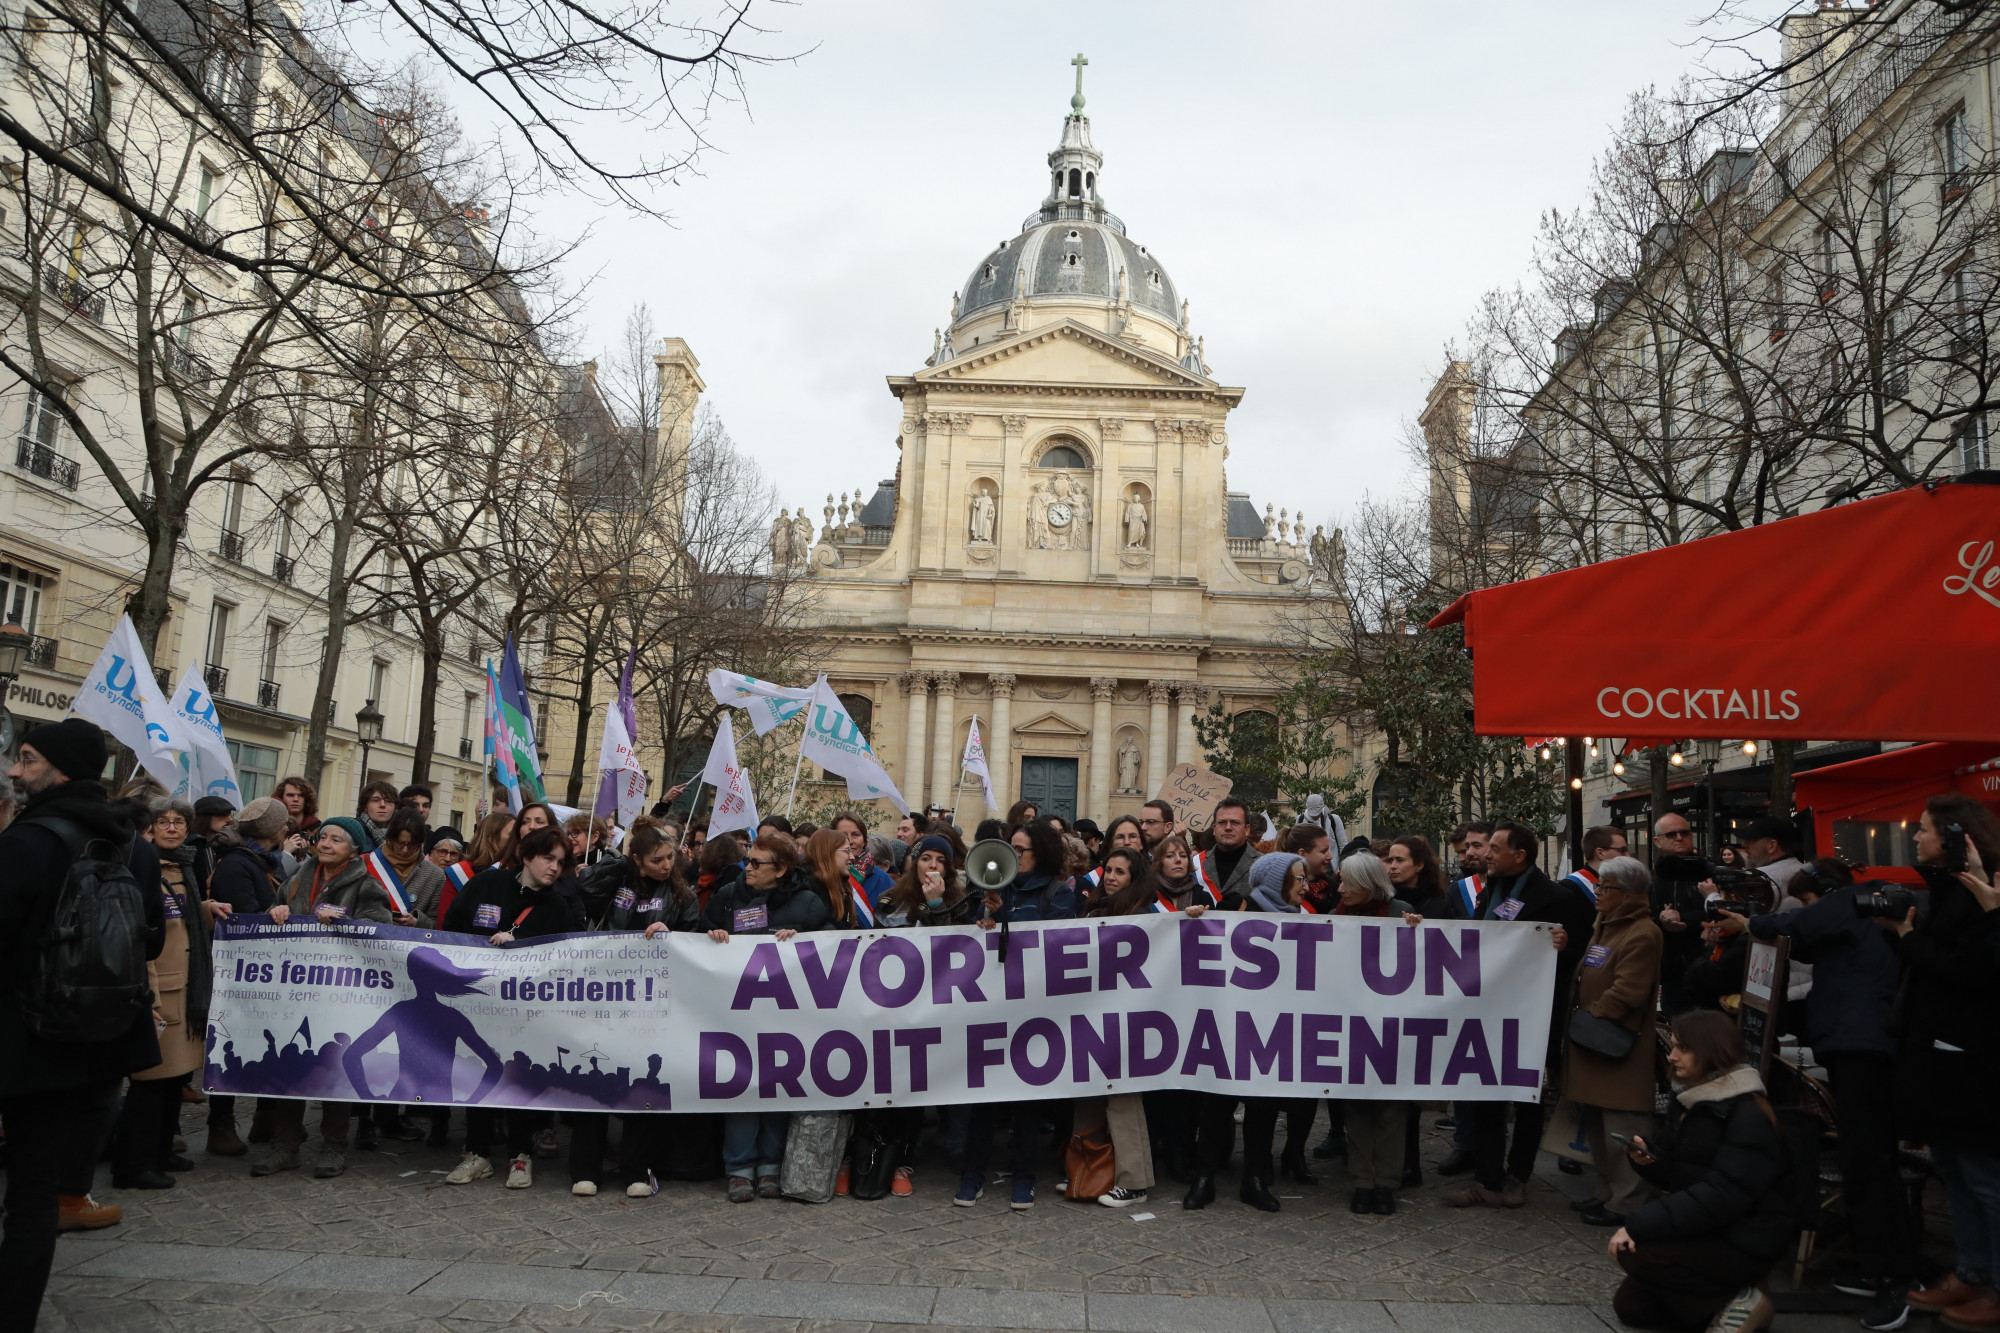 Alkotmányos joggá teszik az abortuszt Franciaországban, hogy a jövőben se lehessen elvenni a nők jogait